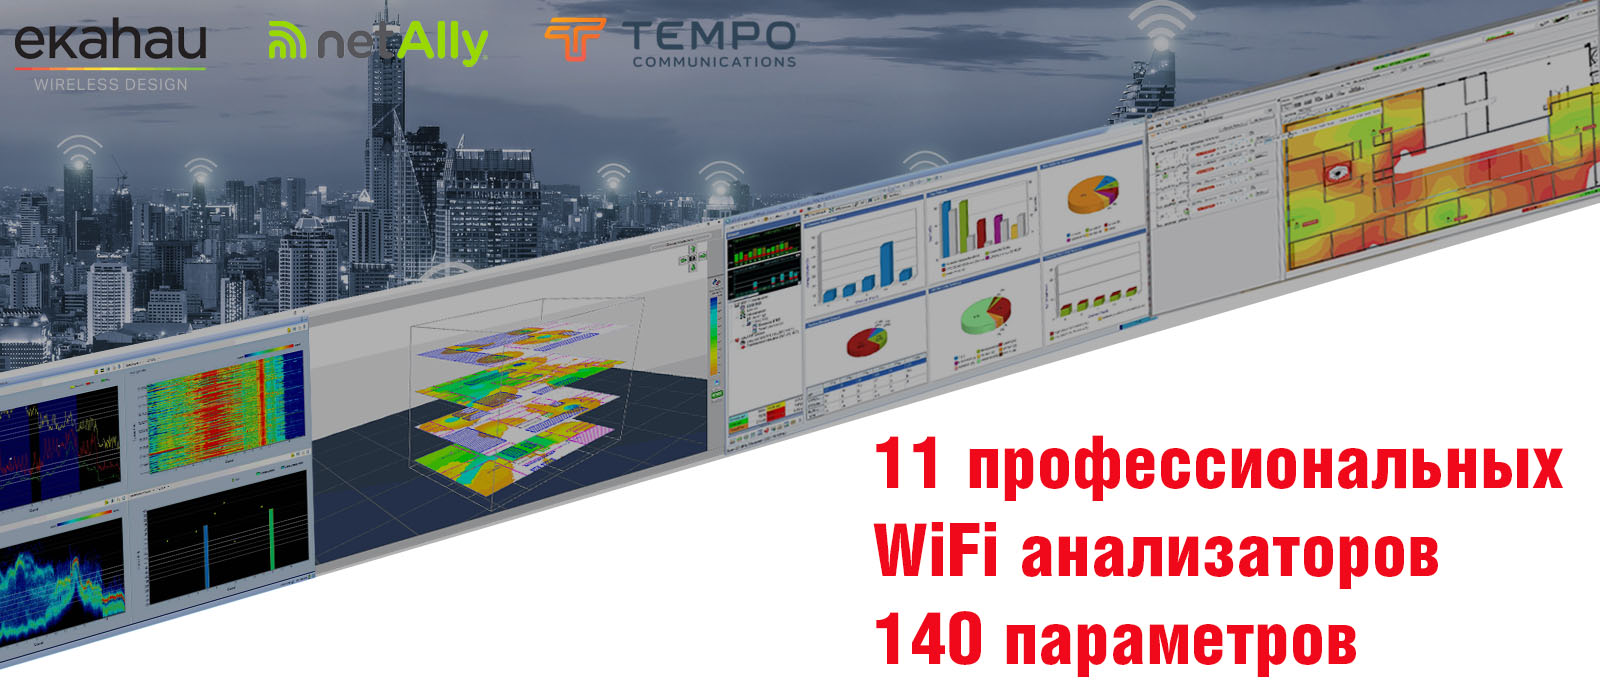 Таблица сравнения профессиональных WiFi анализаторов по 140 параметрам